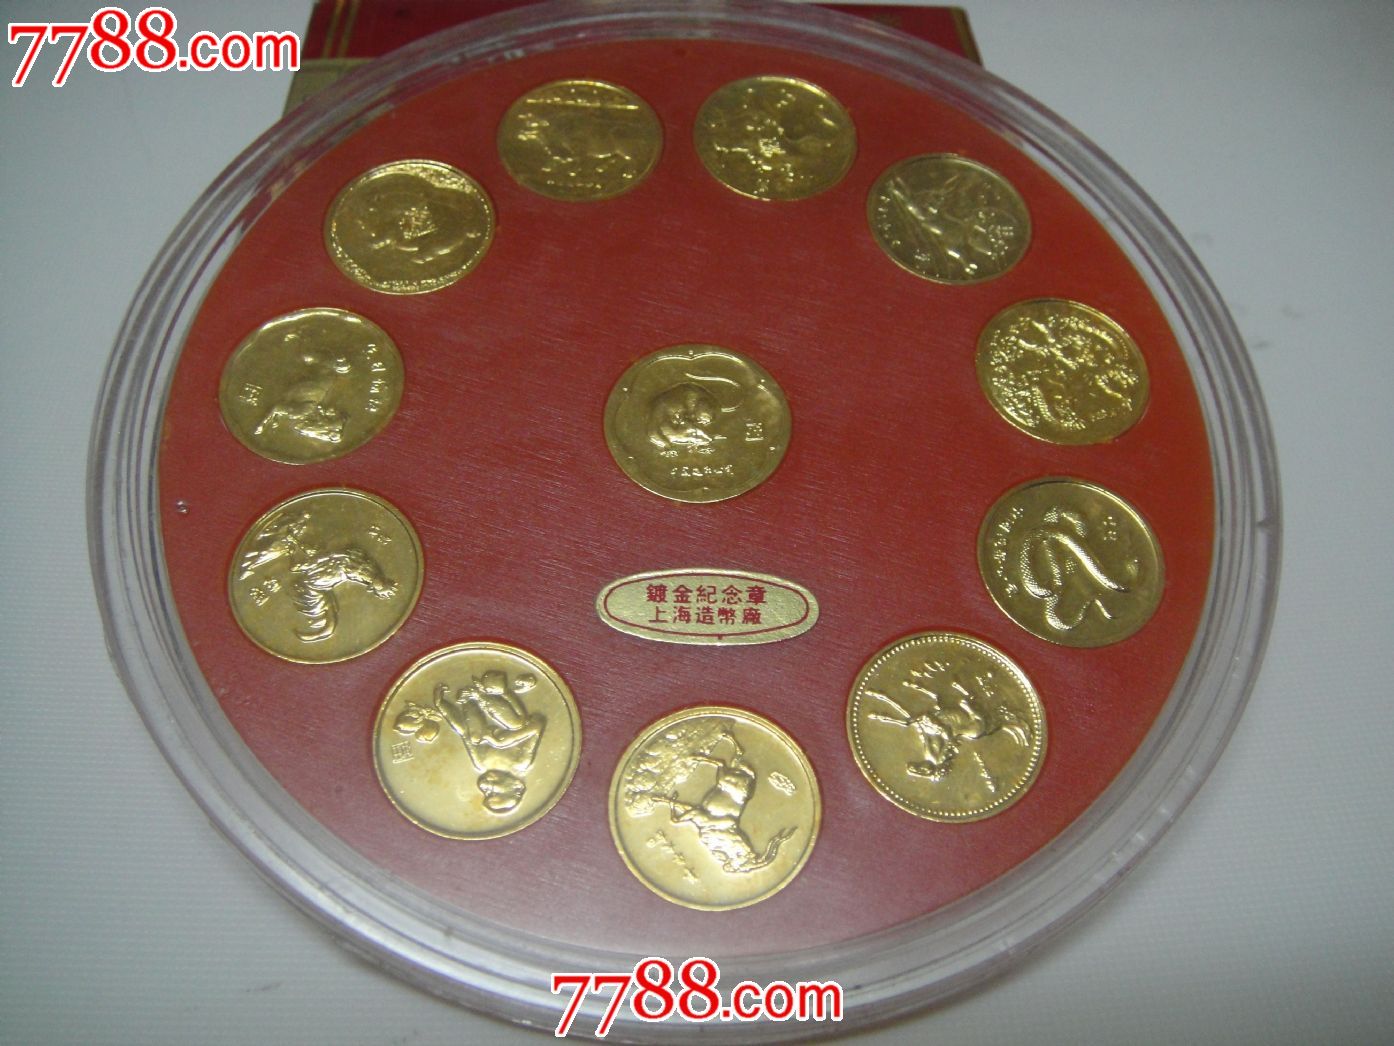 上海造币厂第一轮镀金生肖纪念章(原盒,无证书)